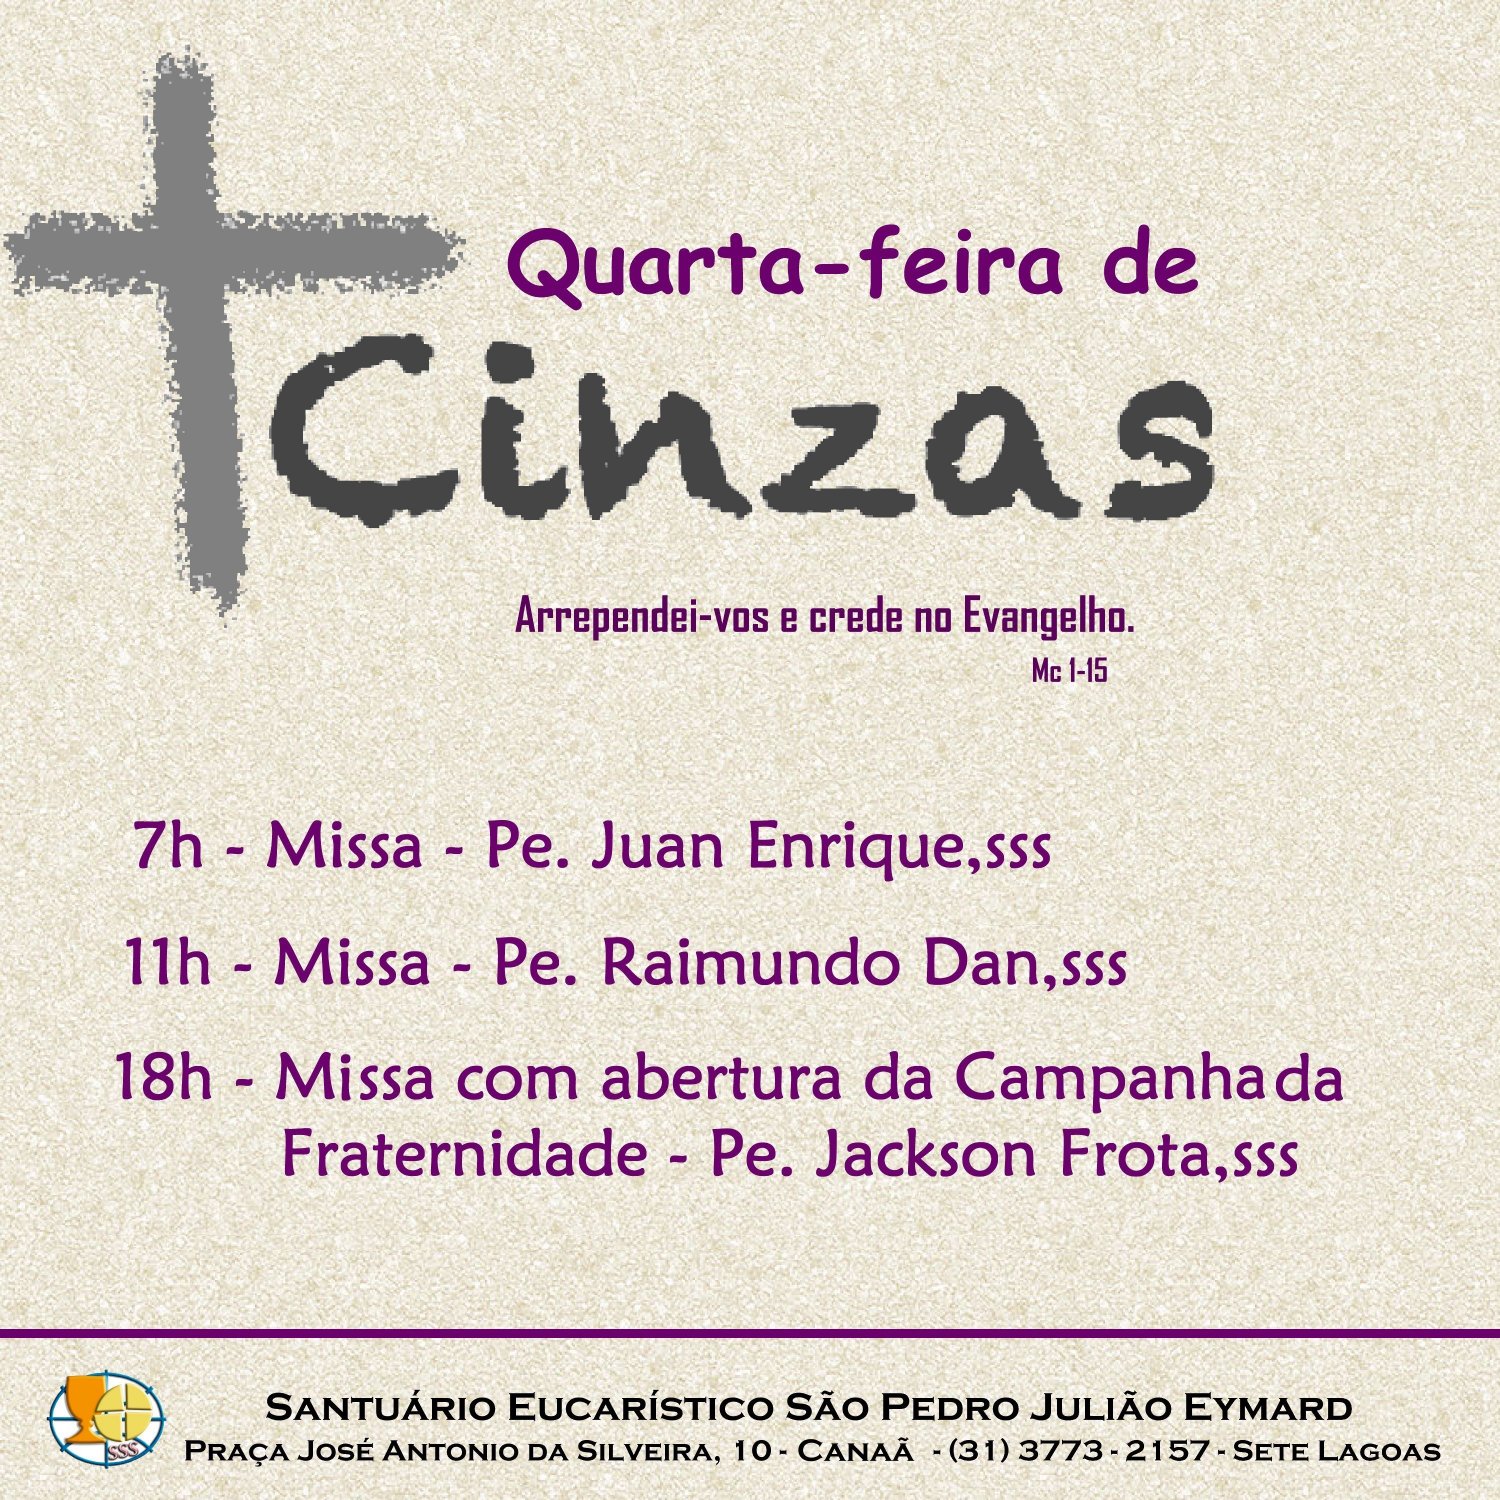 Quarta-feira de Cinzas no Santuário Eucarístico São Pedro Julião Eymard. Participe!